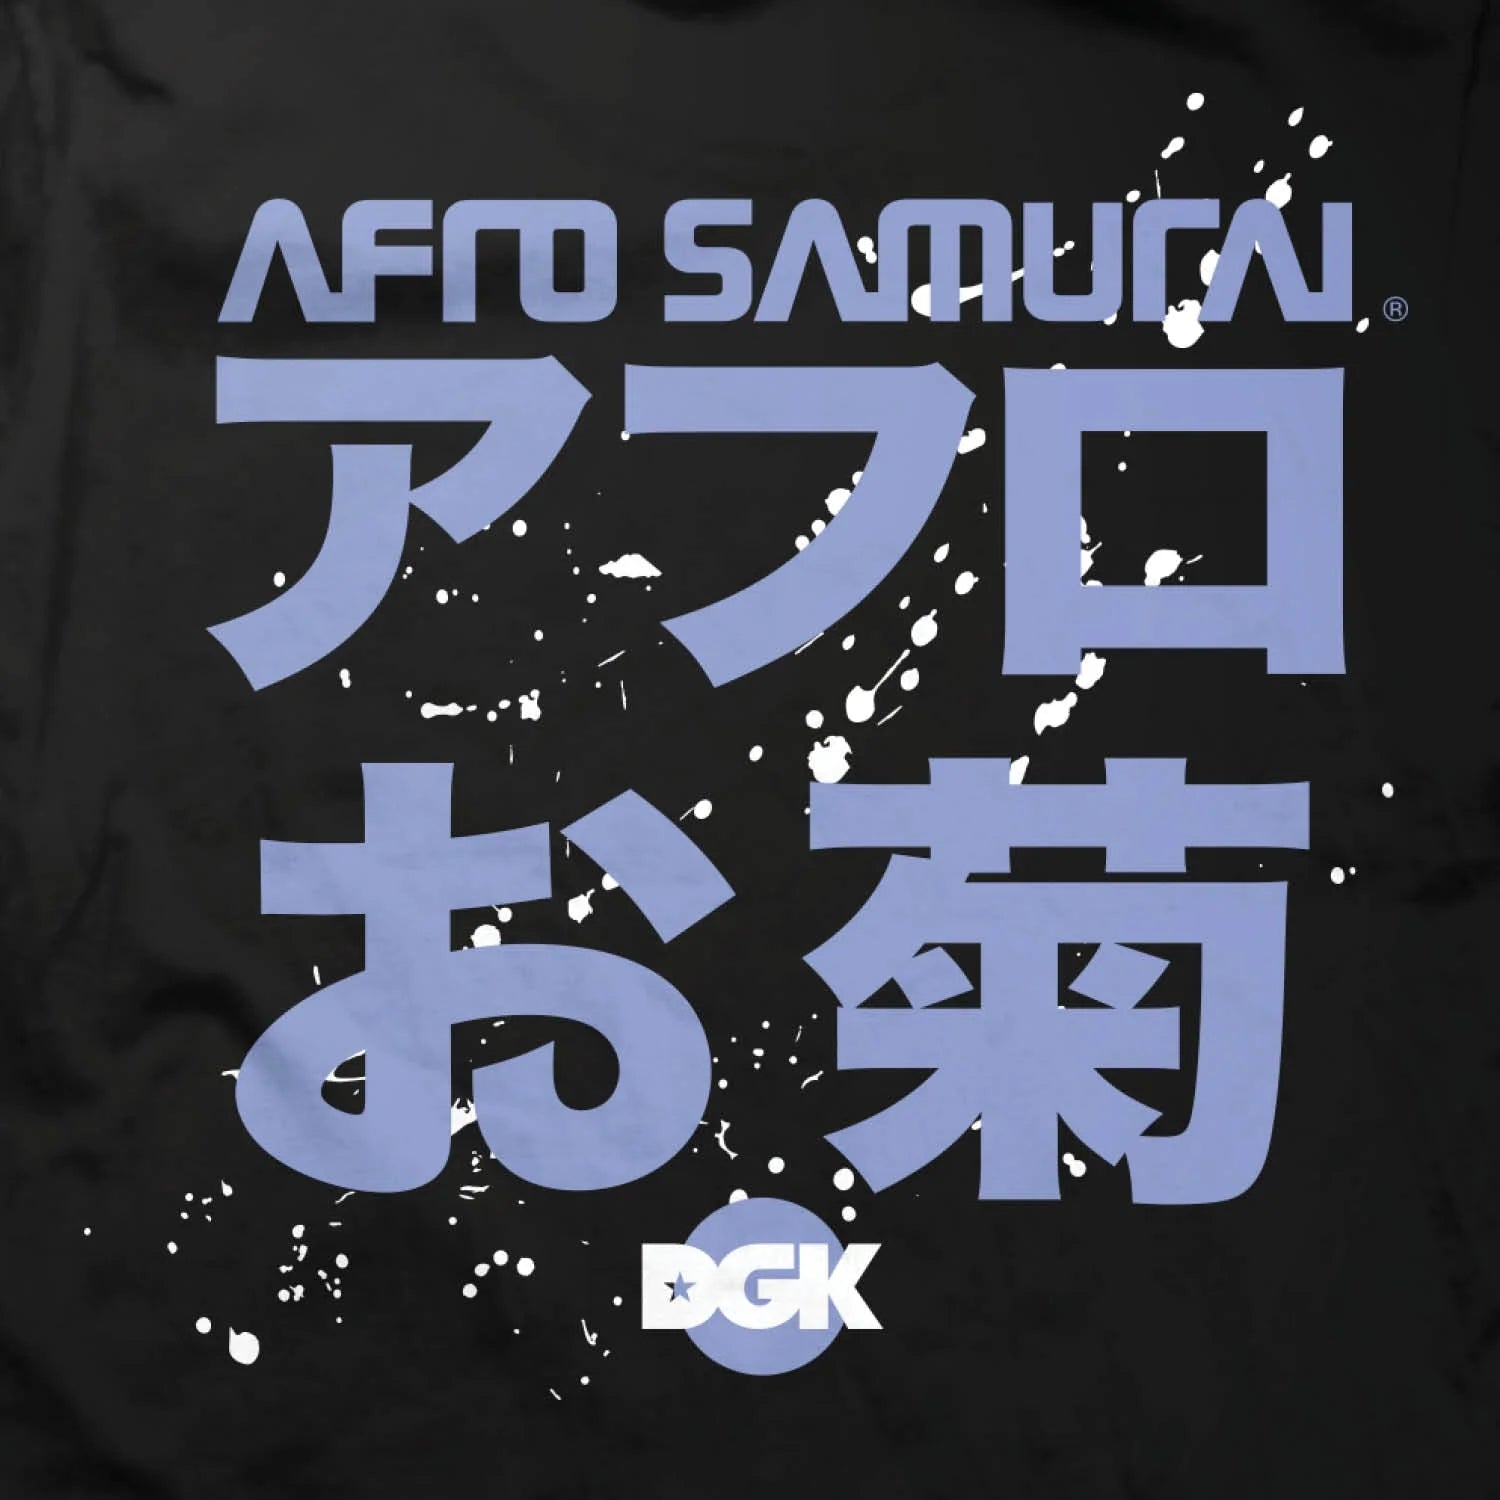 Camiseta Afro Samurai - The Best